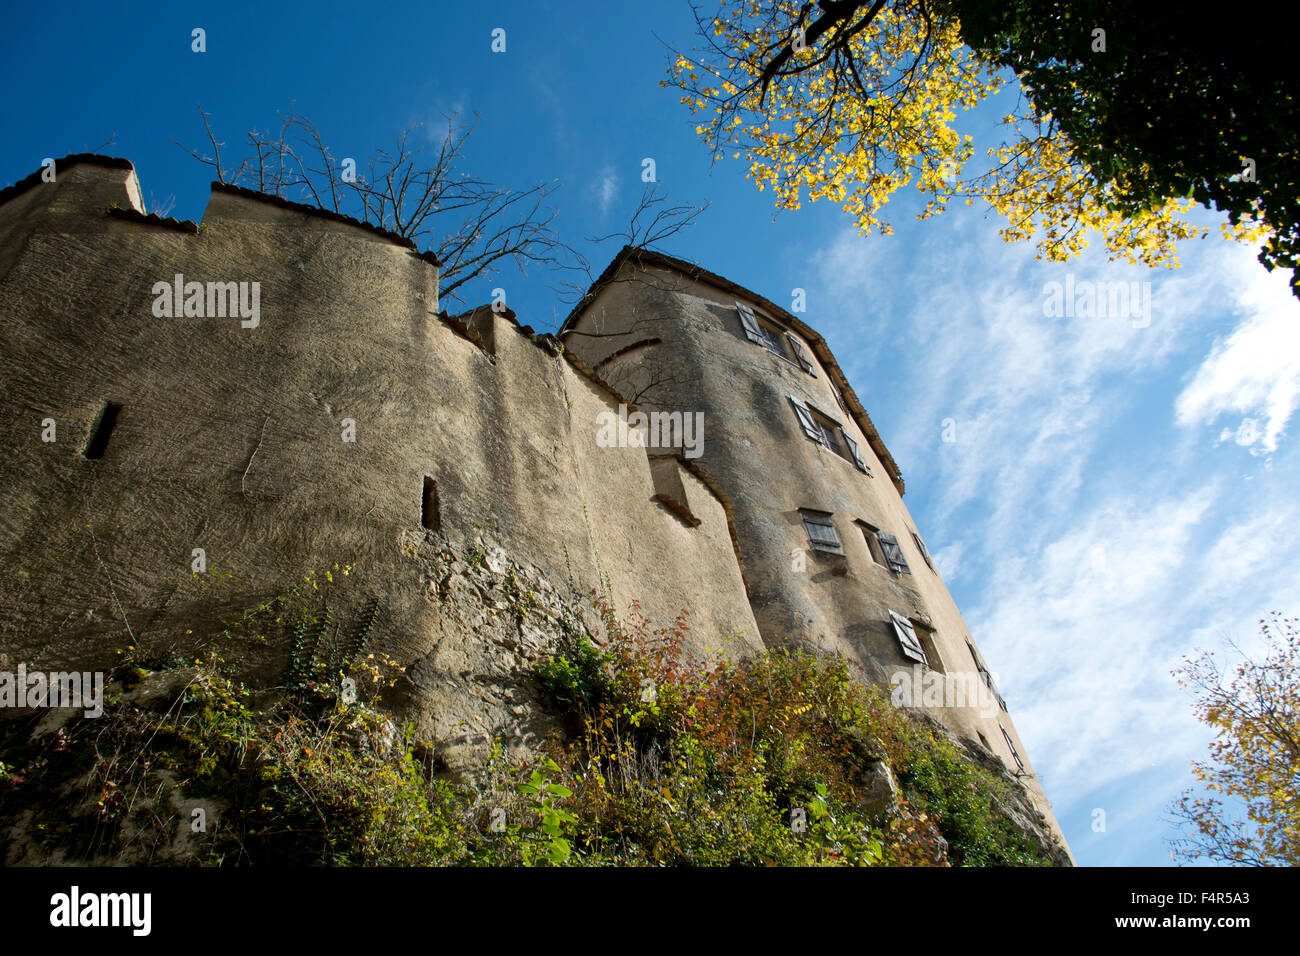 Switzerland, Europe, Baselland, Bubendorf, Wildenstein, castle, lock, autumn Stock Photo